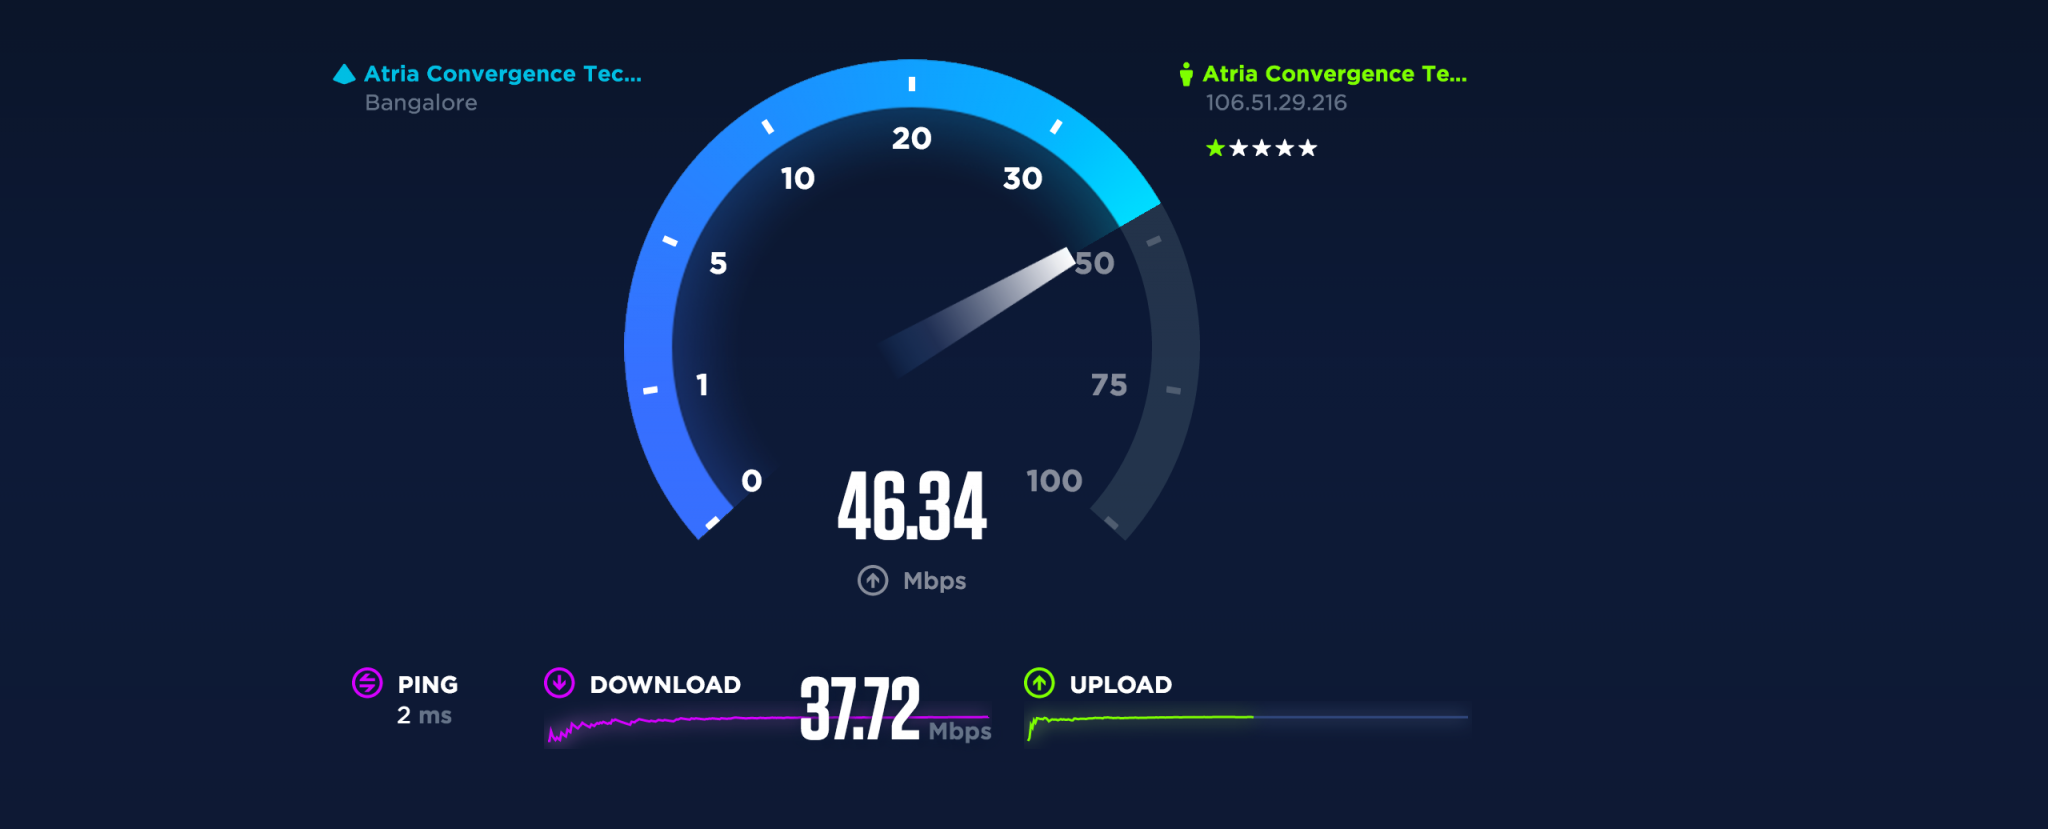 Играет скорость интернета. Скорость интернета. Тест скорости интернета. Спидтест скорости интернета. Низкая скорость интернета.